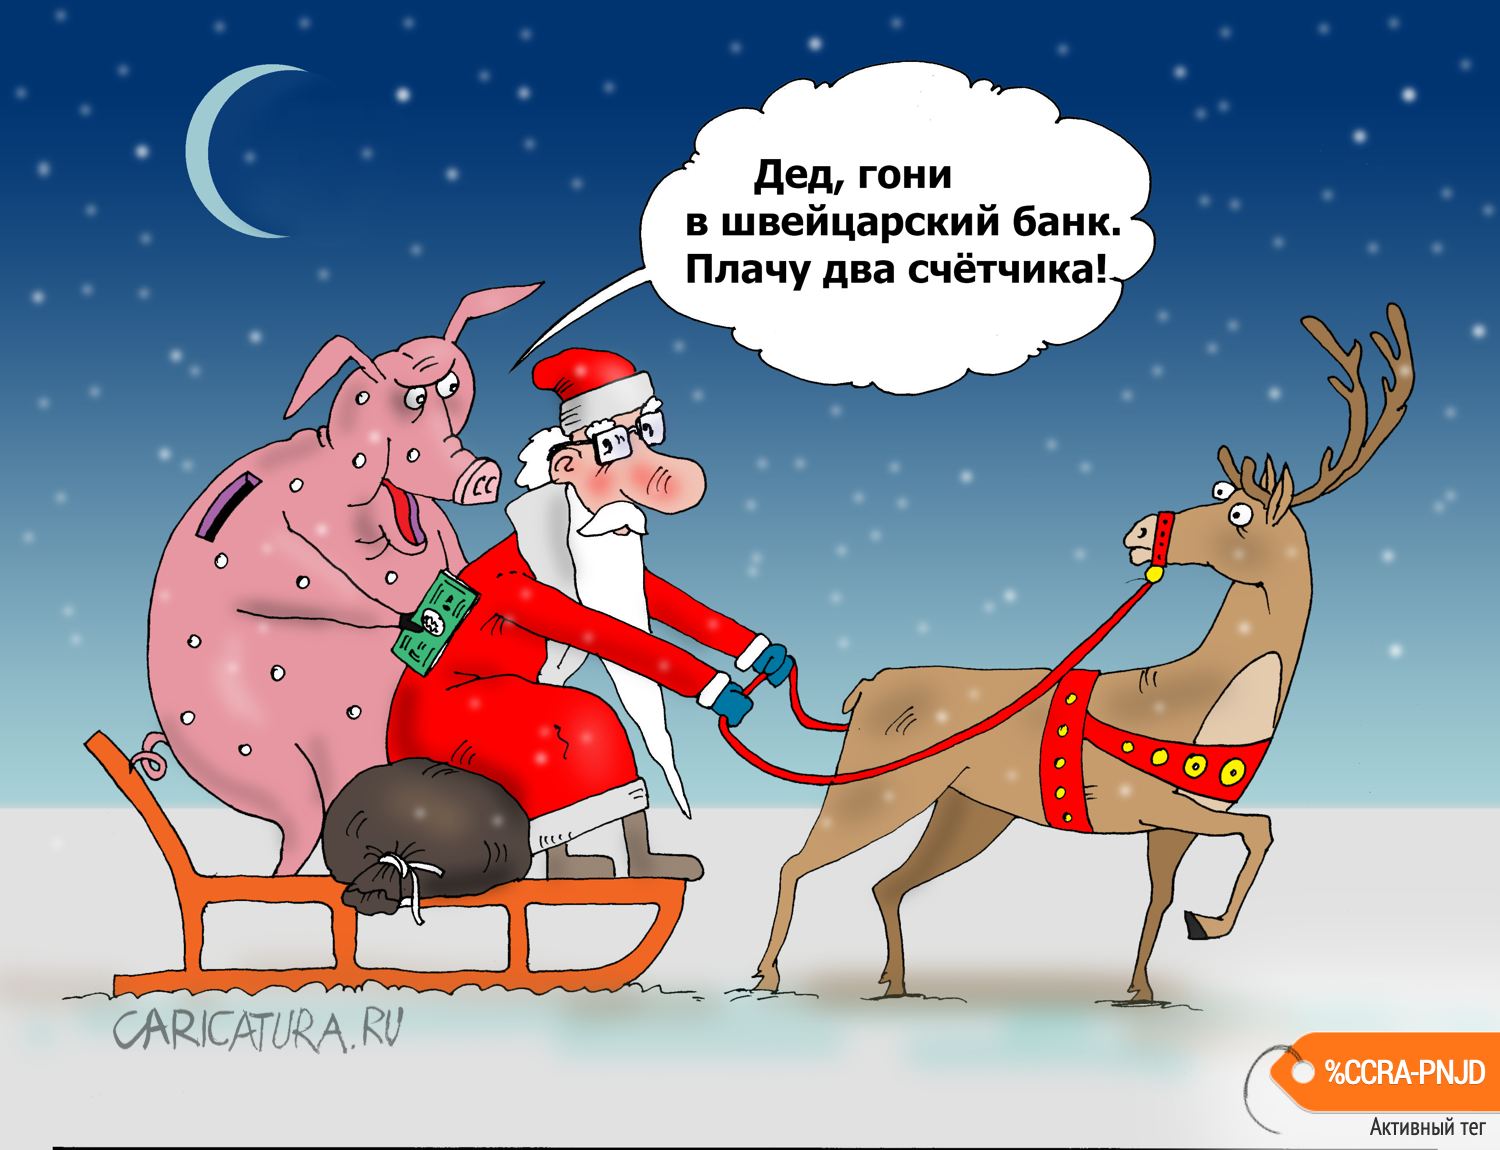 Карикатура "Дед, гони", Валерий Тарасенко